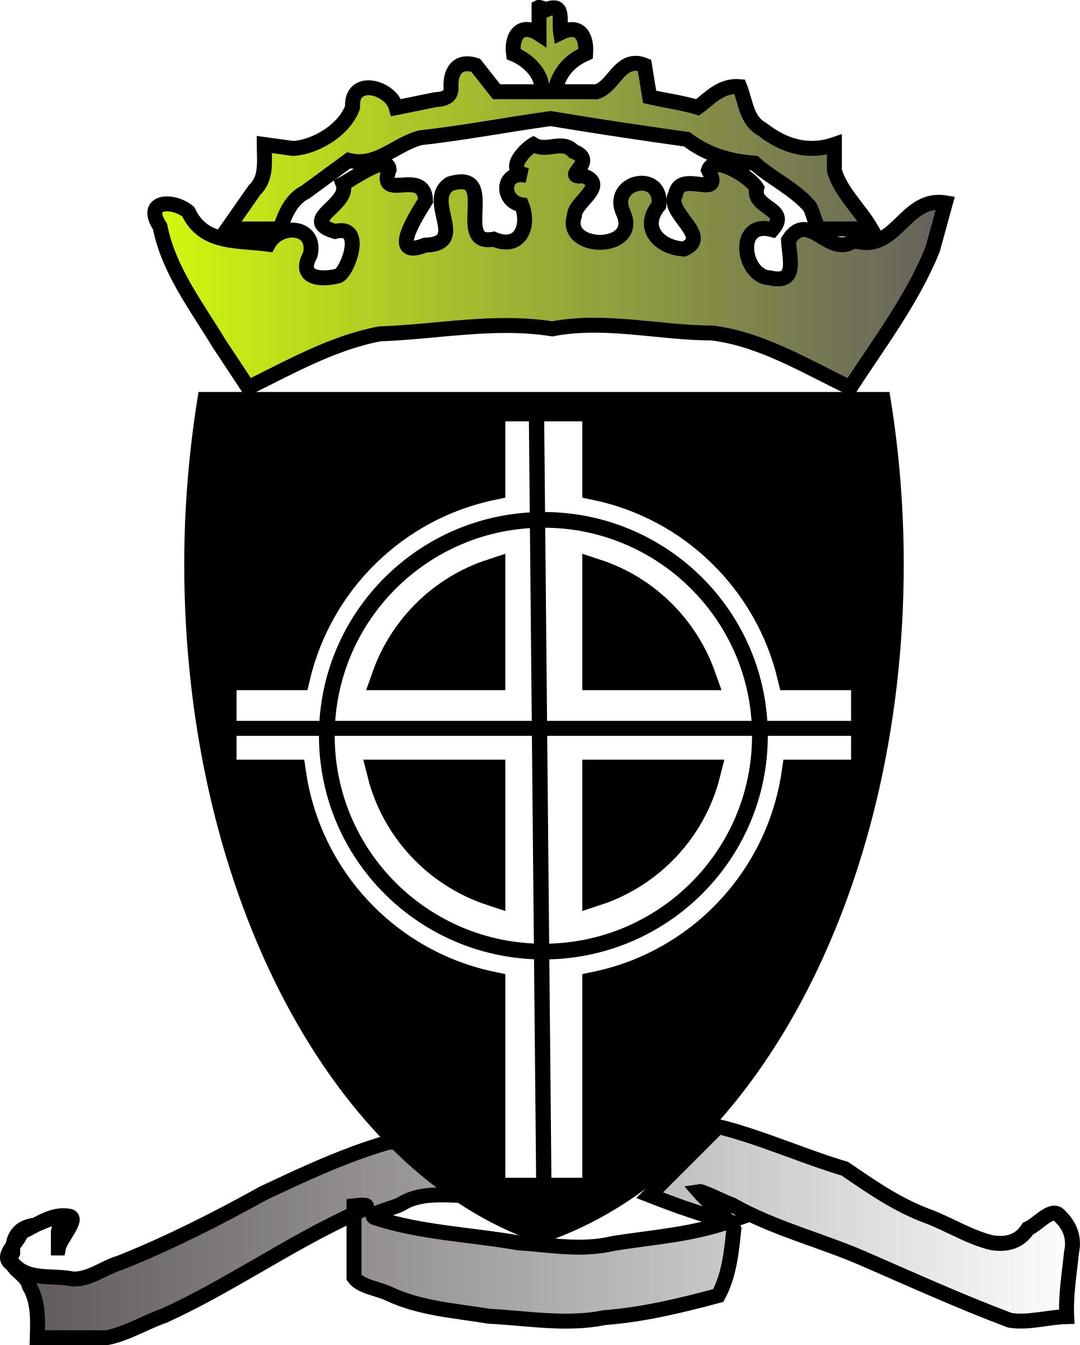 Emblem of Aristasia png transparent